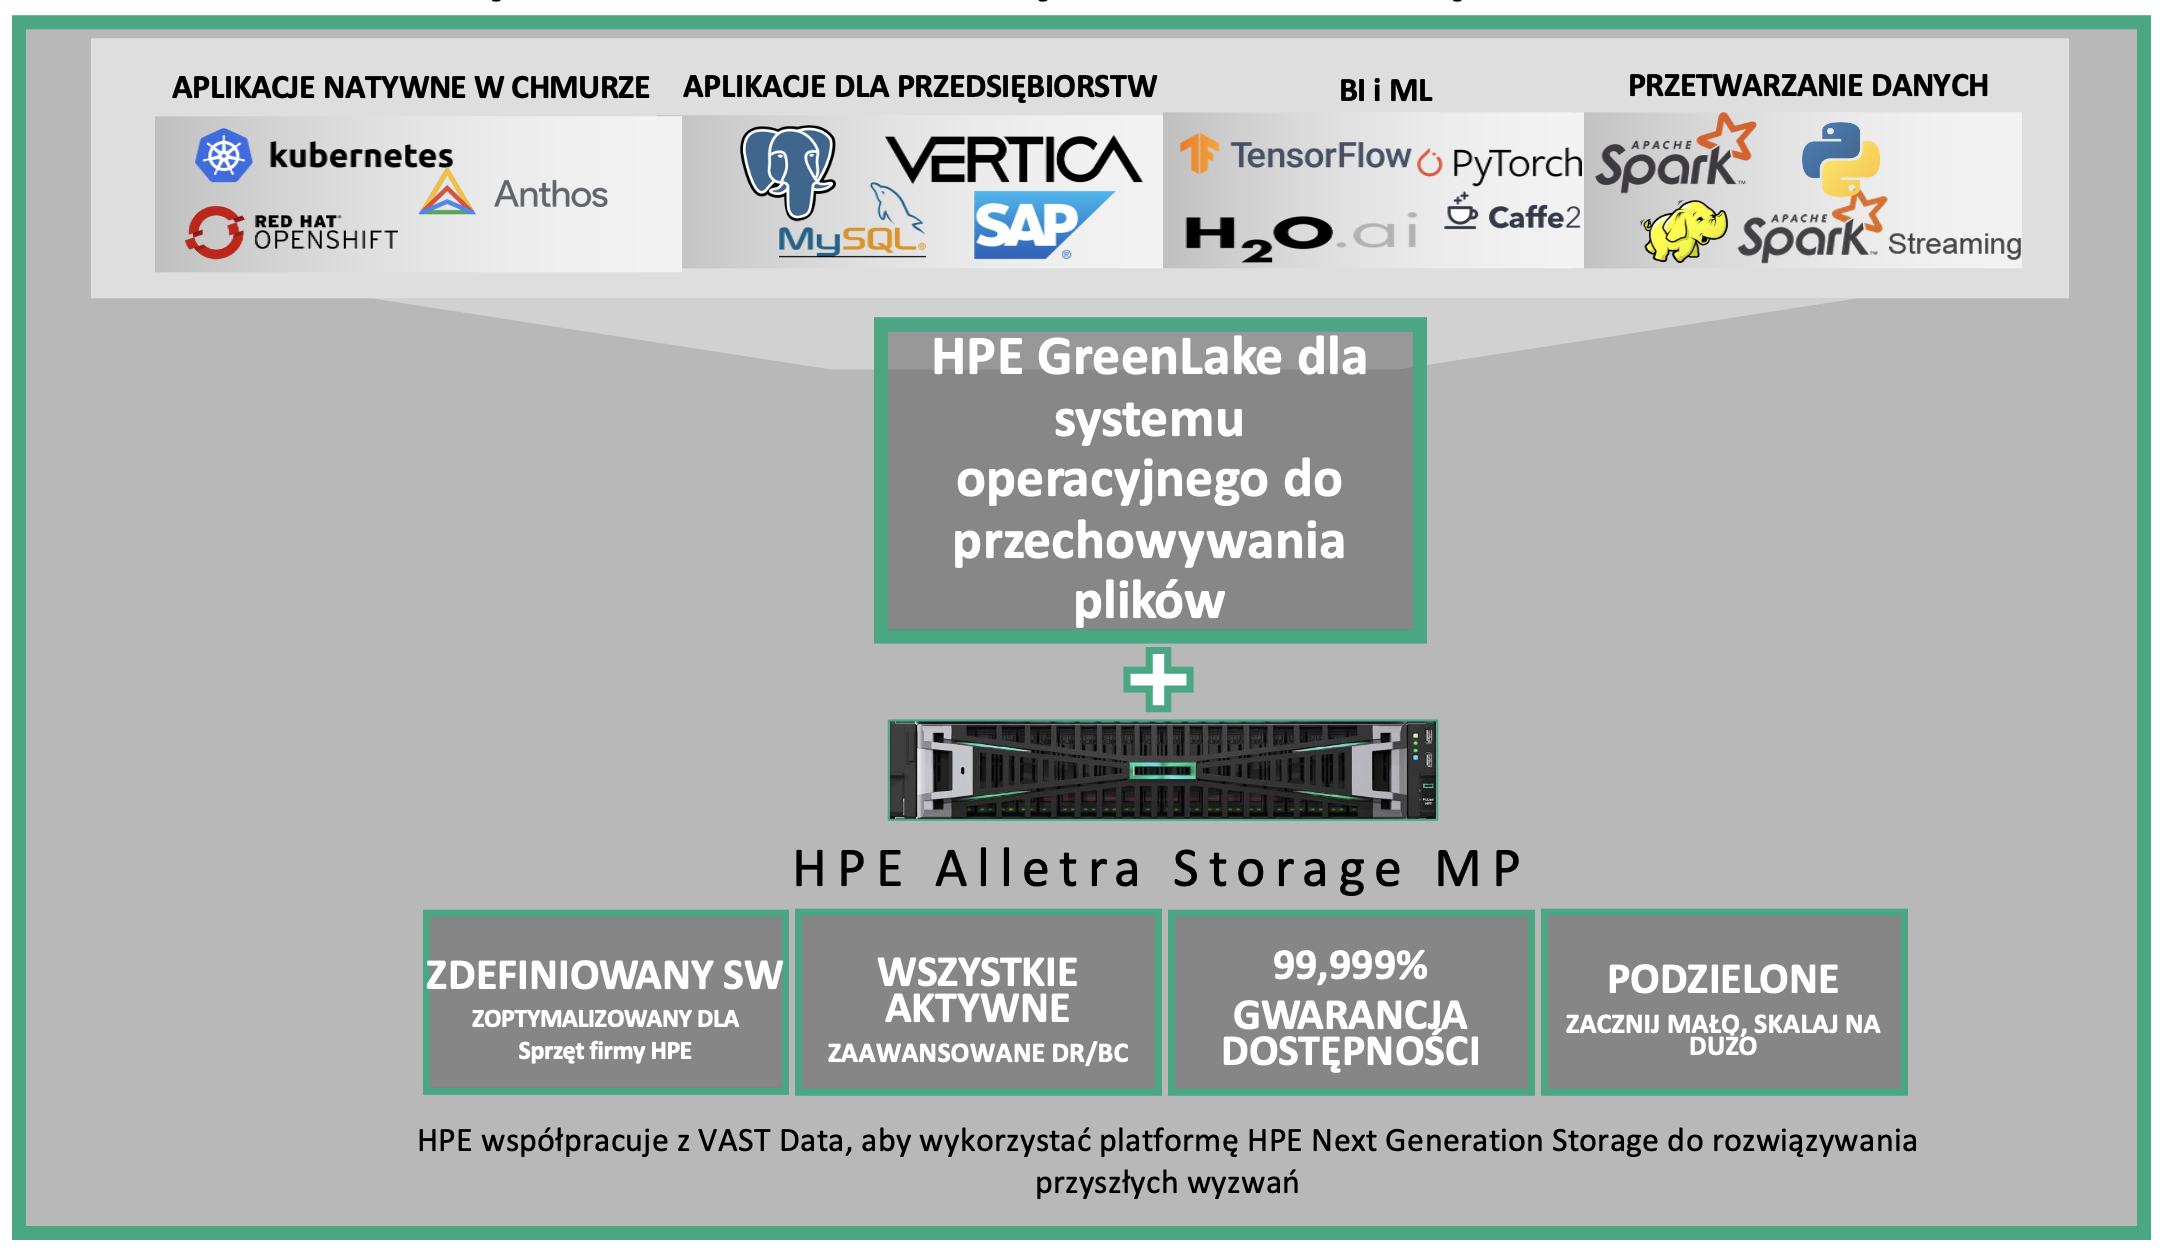 HPE Alletra MP - File Storage